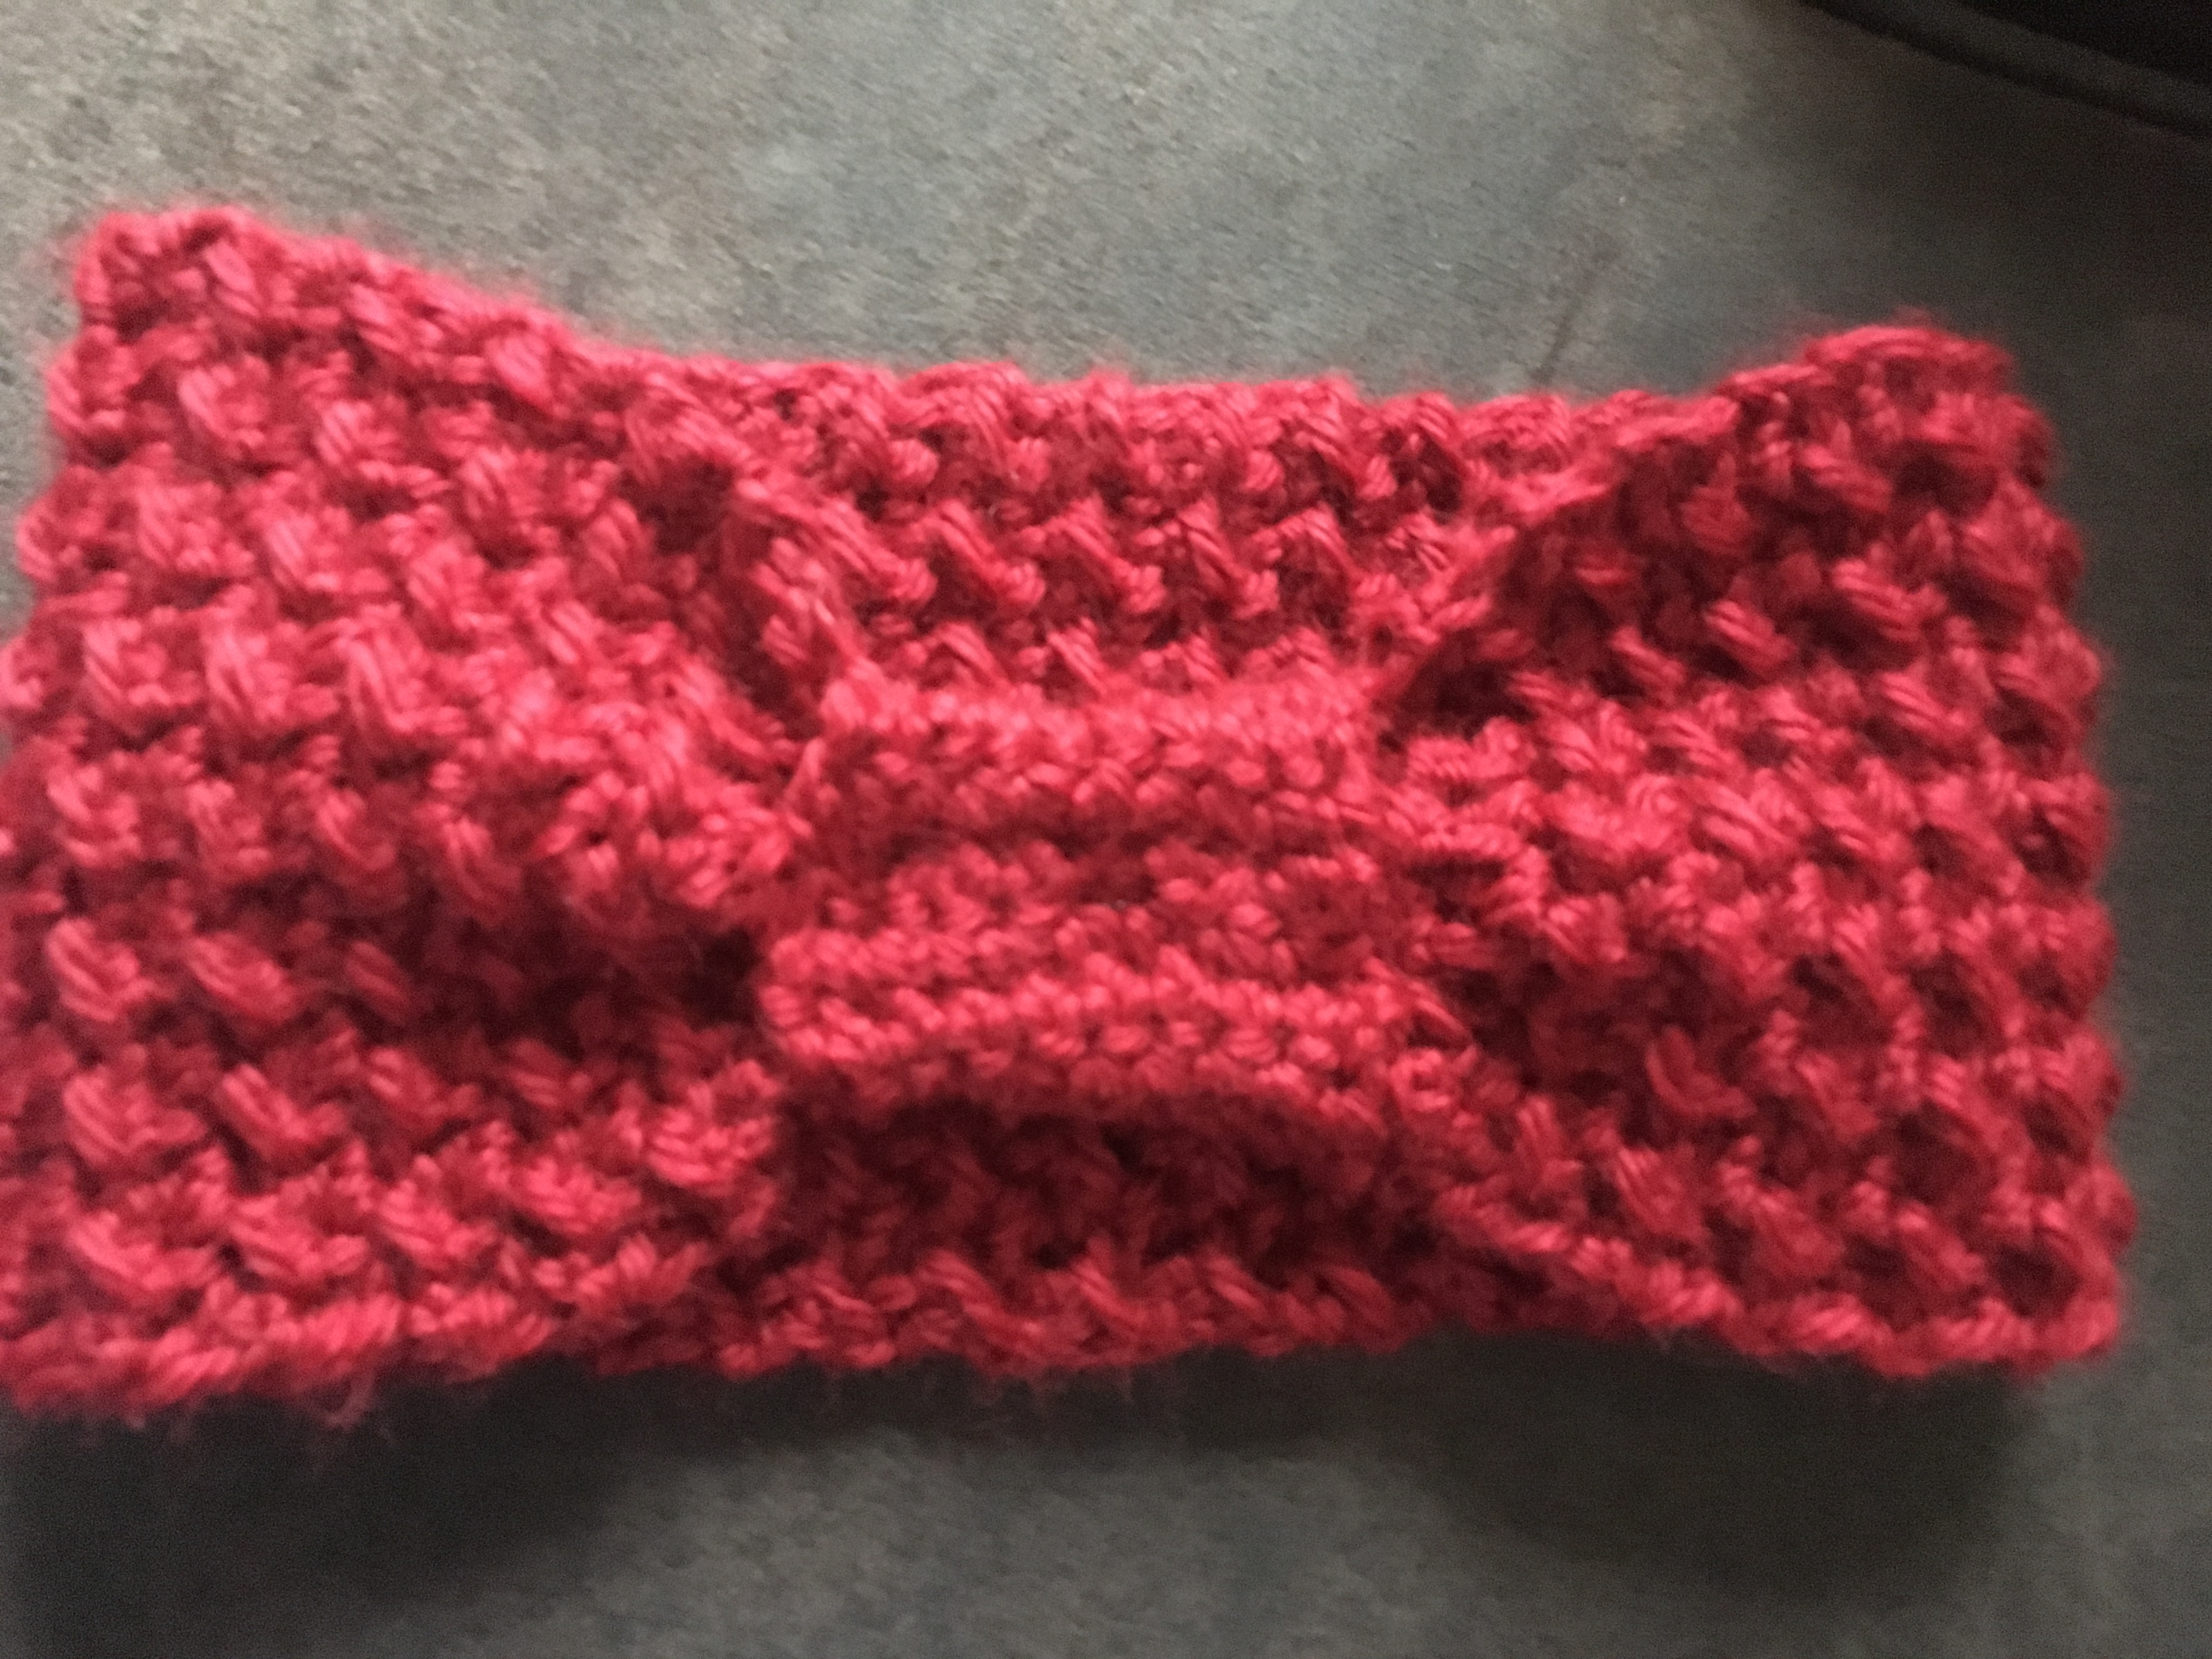 crochet headband, knot headband, how to crochet a knot headgand, free crochet pattern, crochet video tutorial, easty to follow crochet instructions